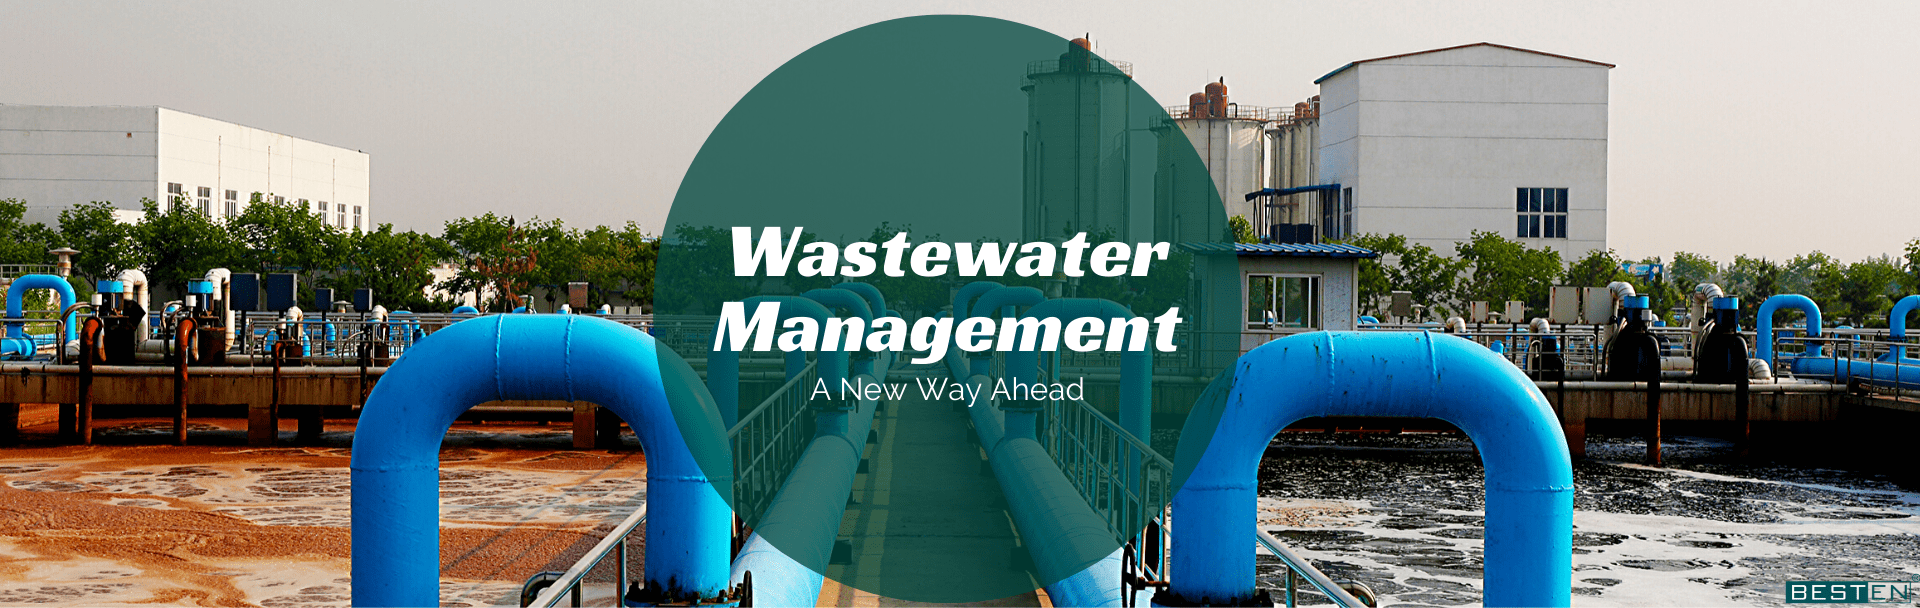 Wastewater management